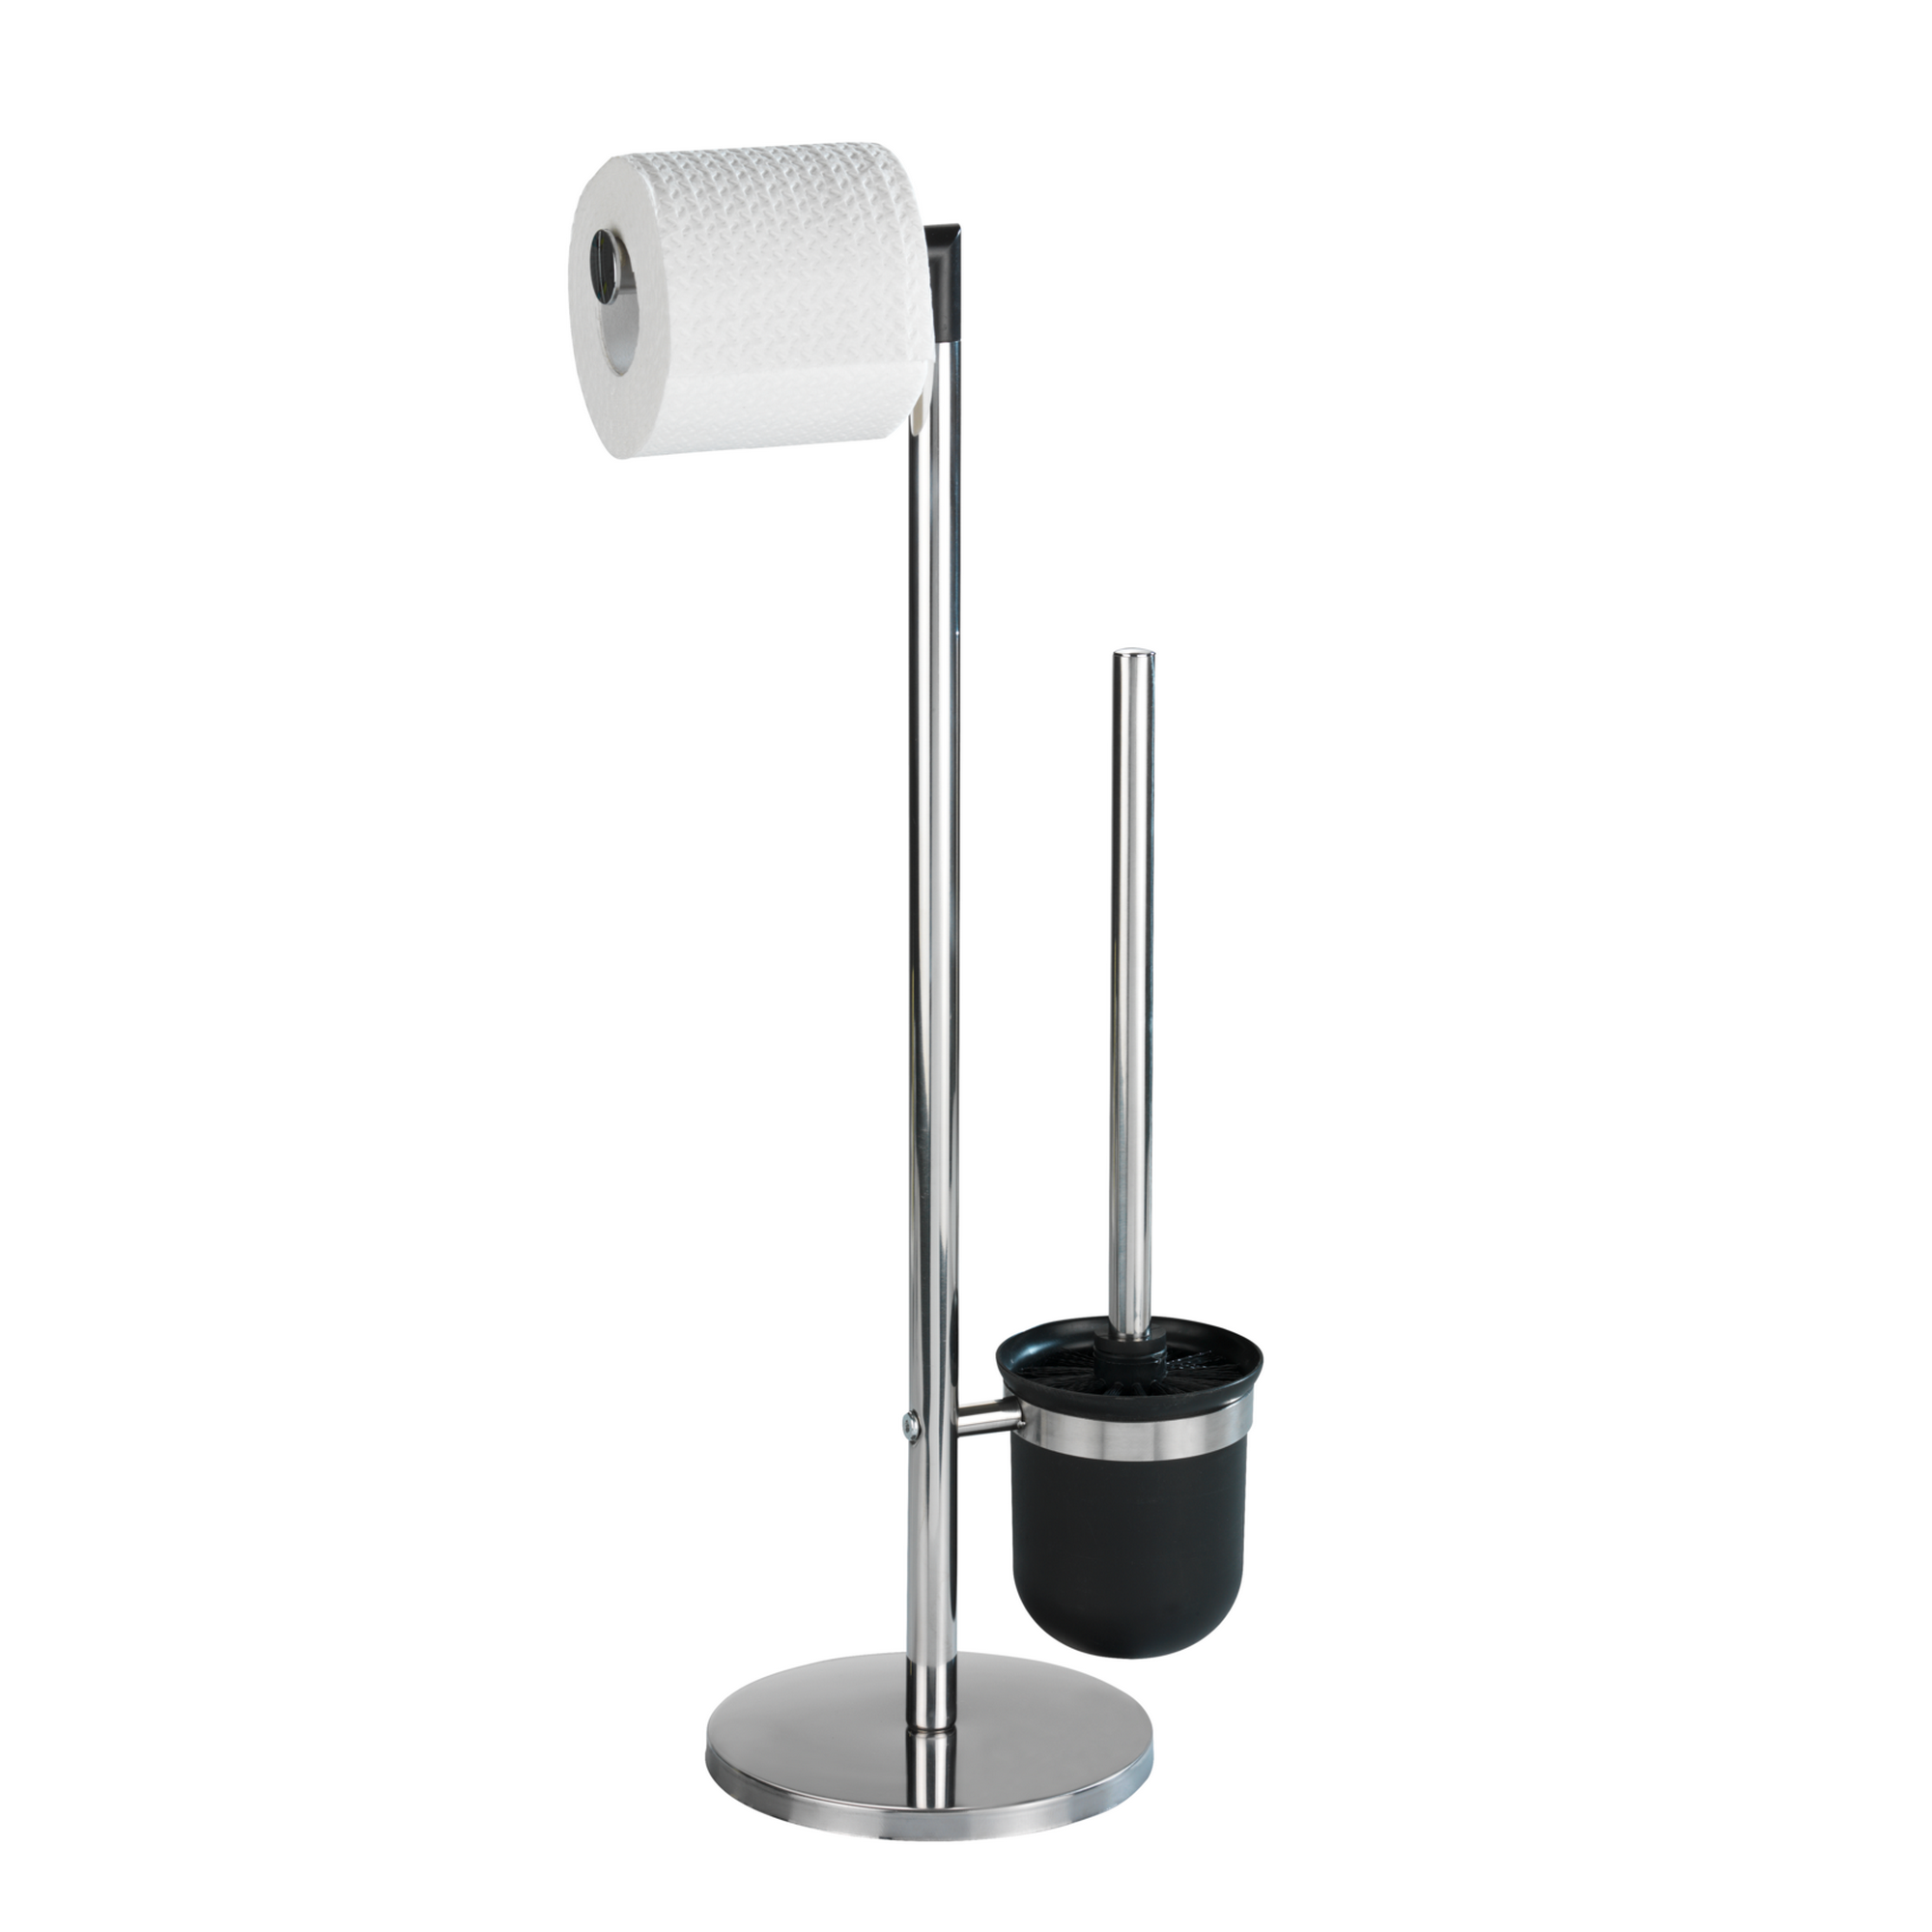 Stand WC-Garnitur 'Parus' Edelstahl glänzend + product picture